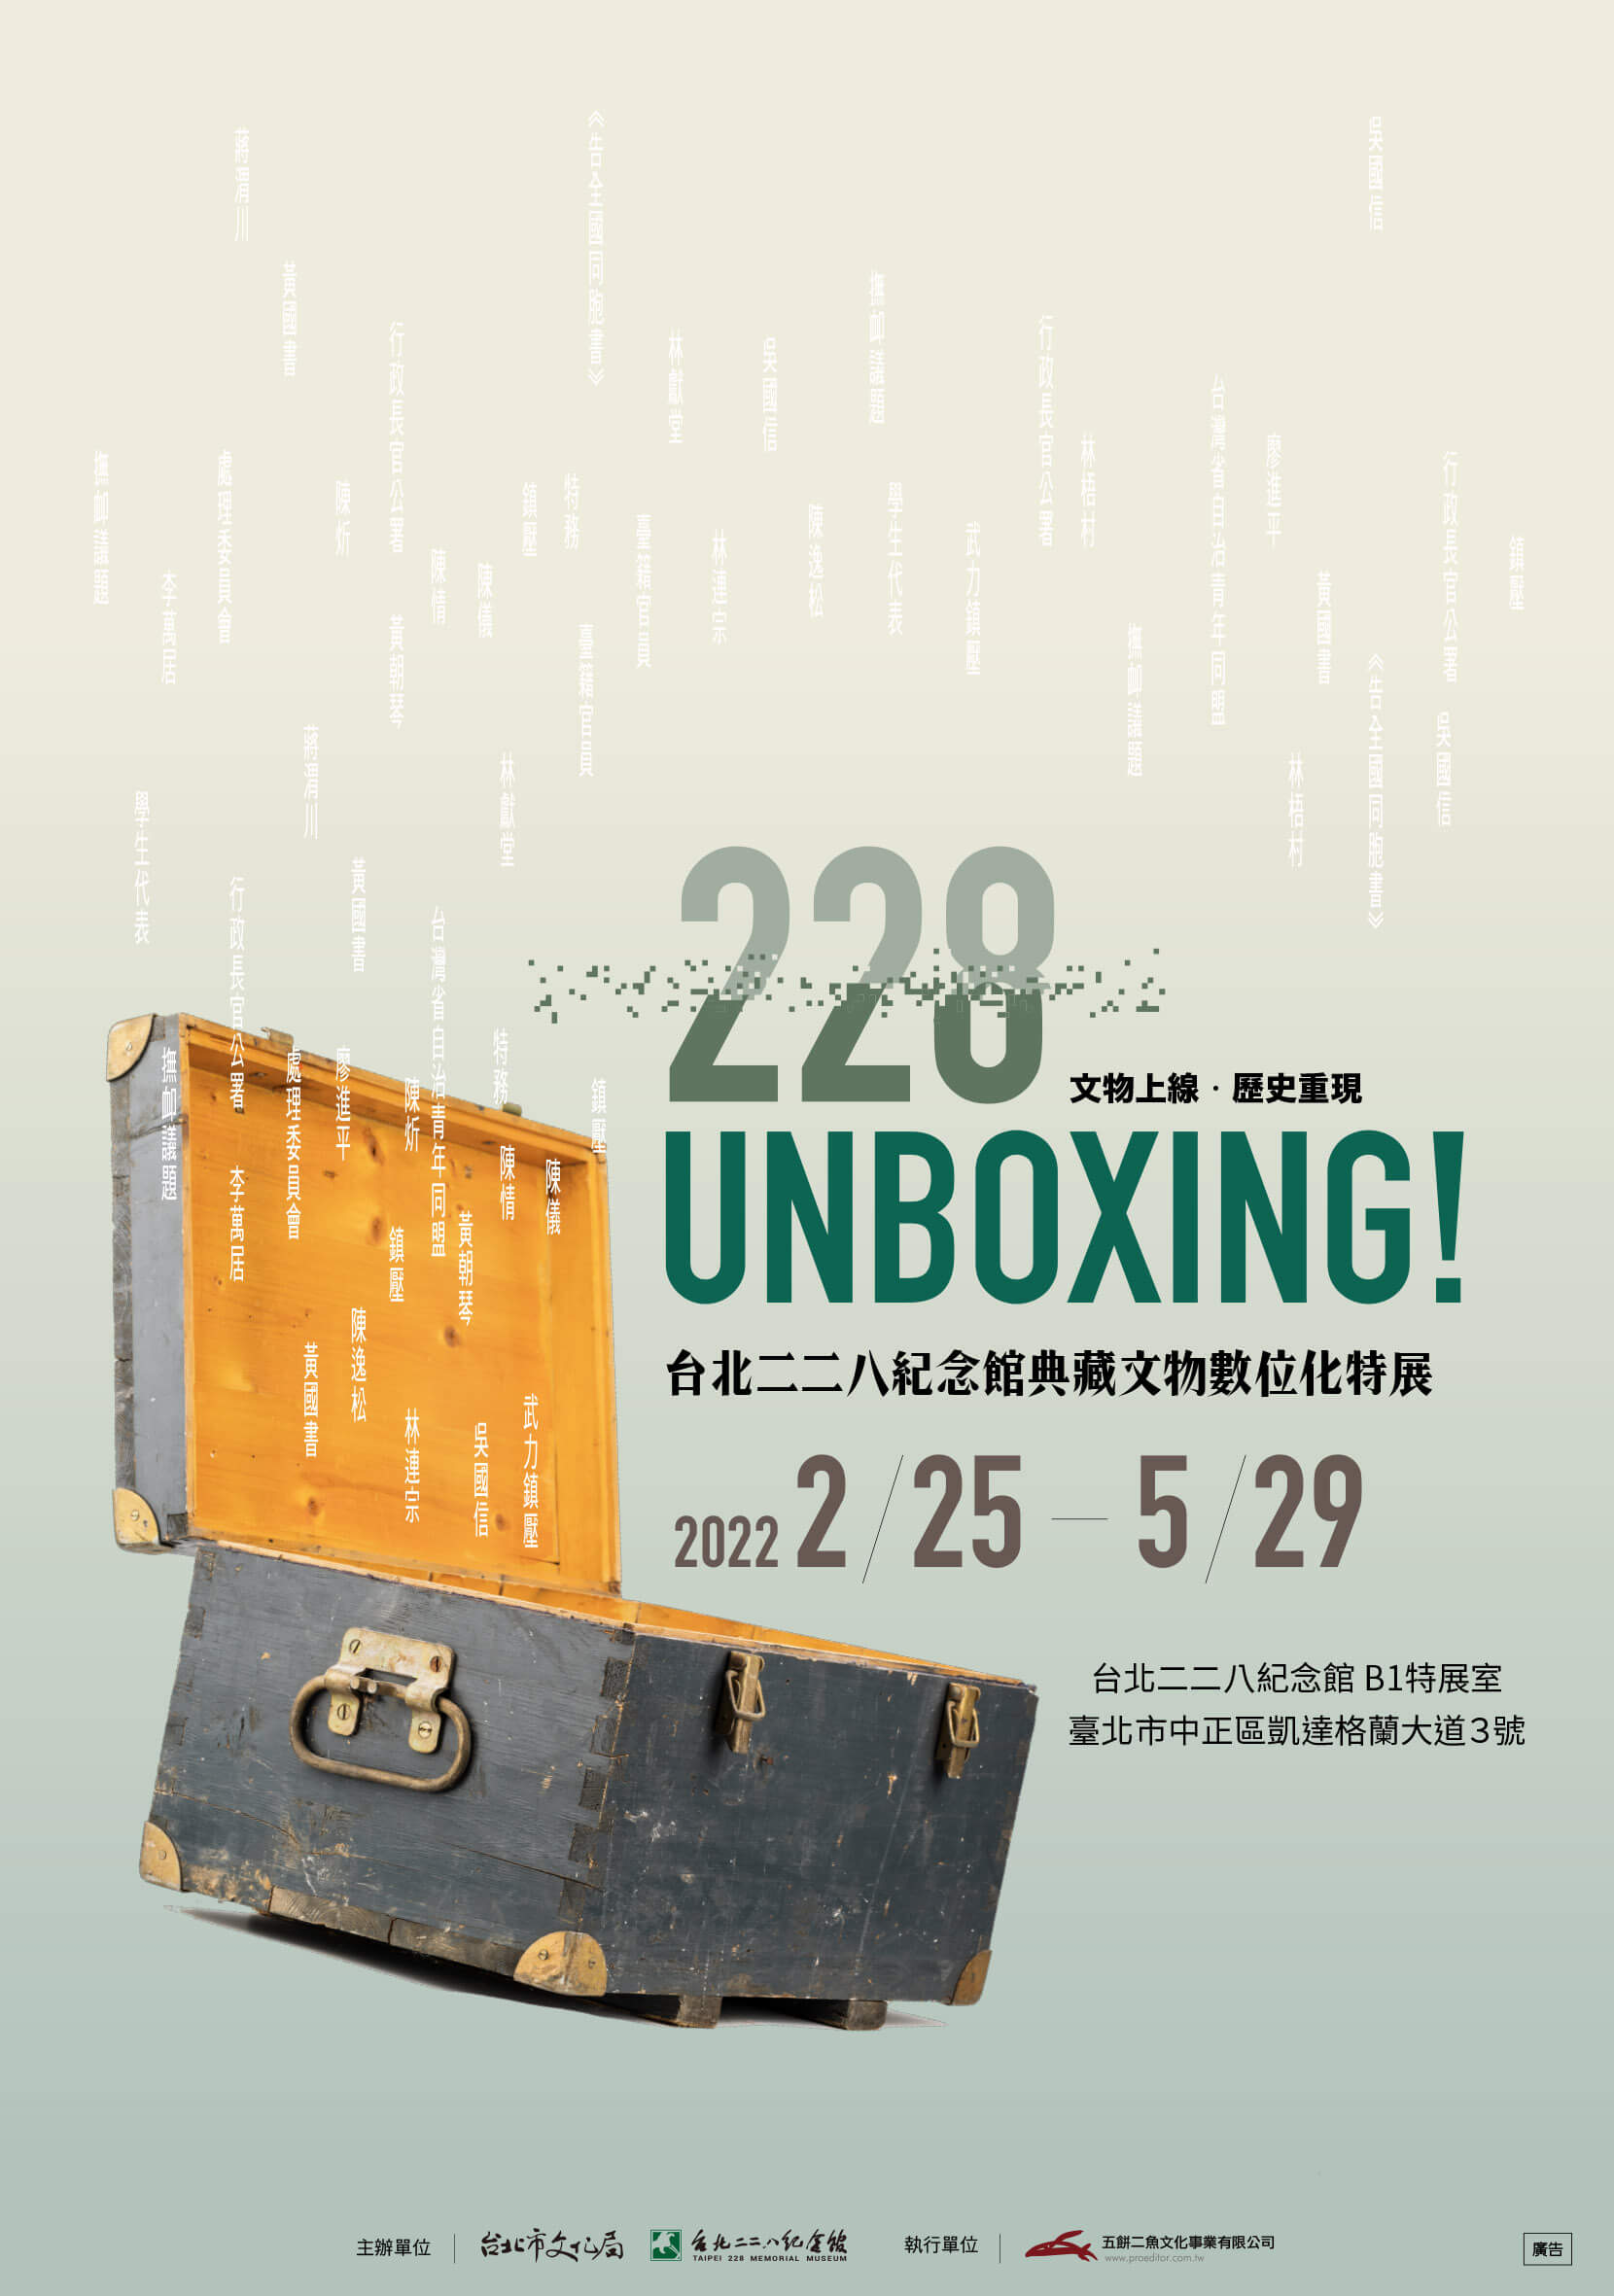 UNBOXING! 台北二二八紀念館典藏文物數位化特展